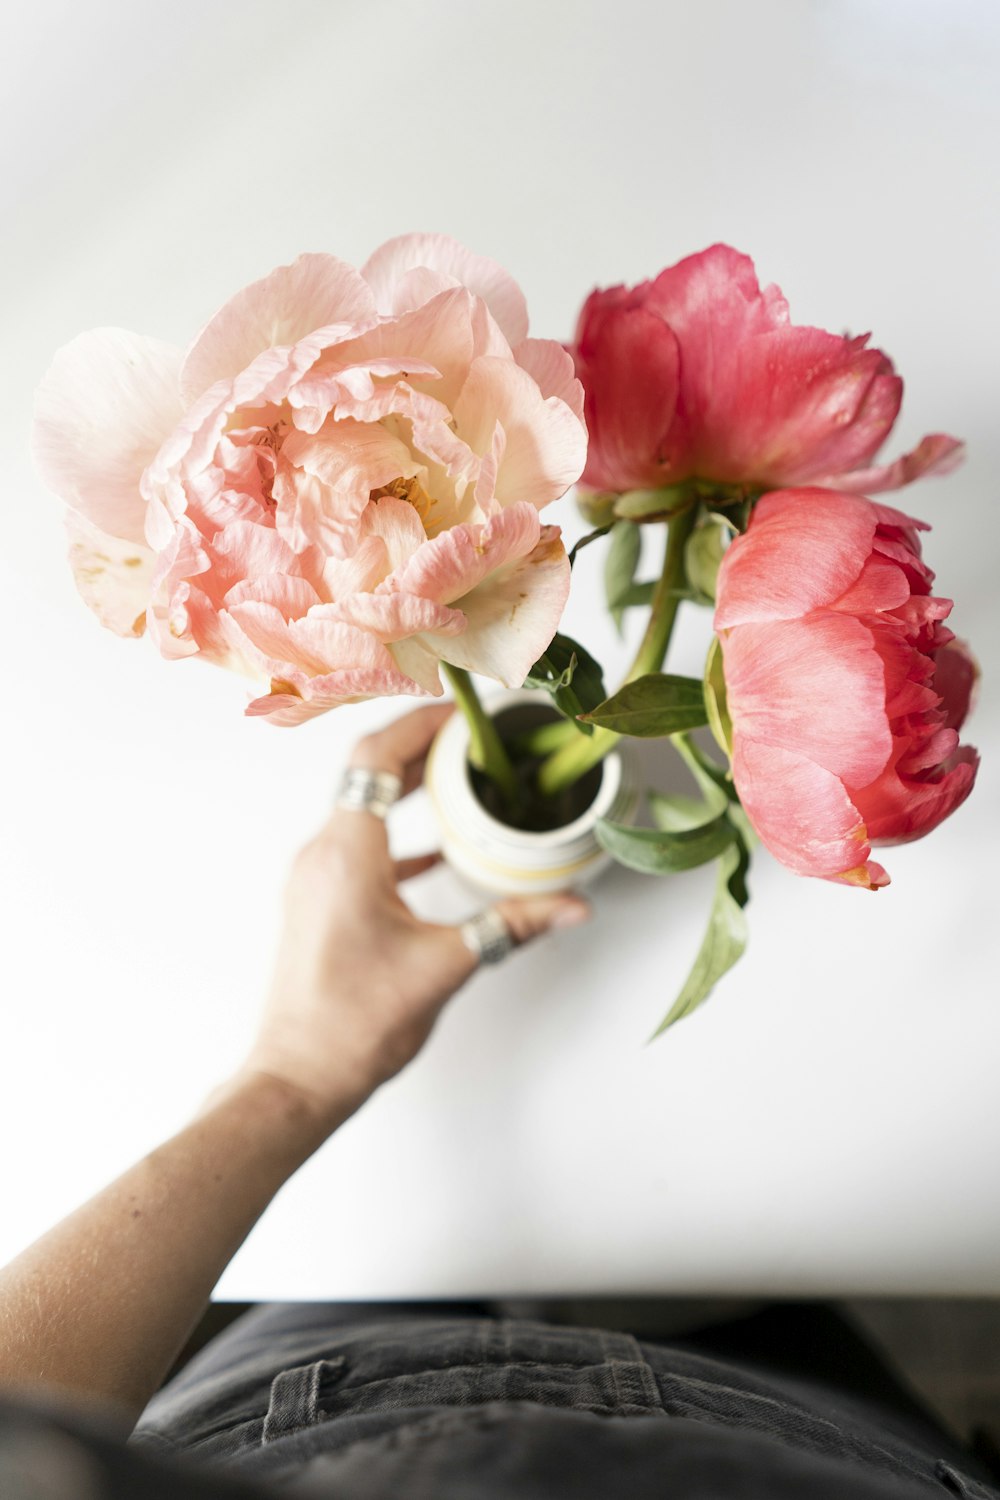 Persona sosteniendo flores rosas y blancas